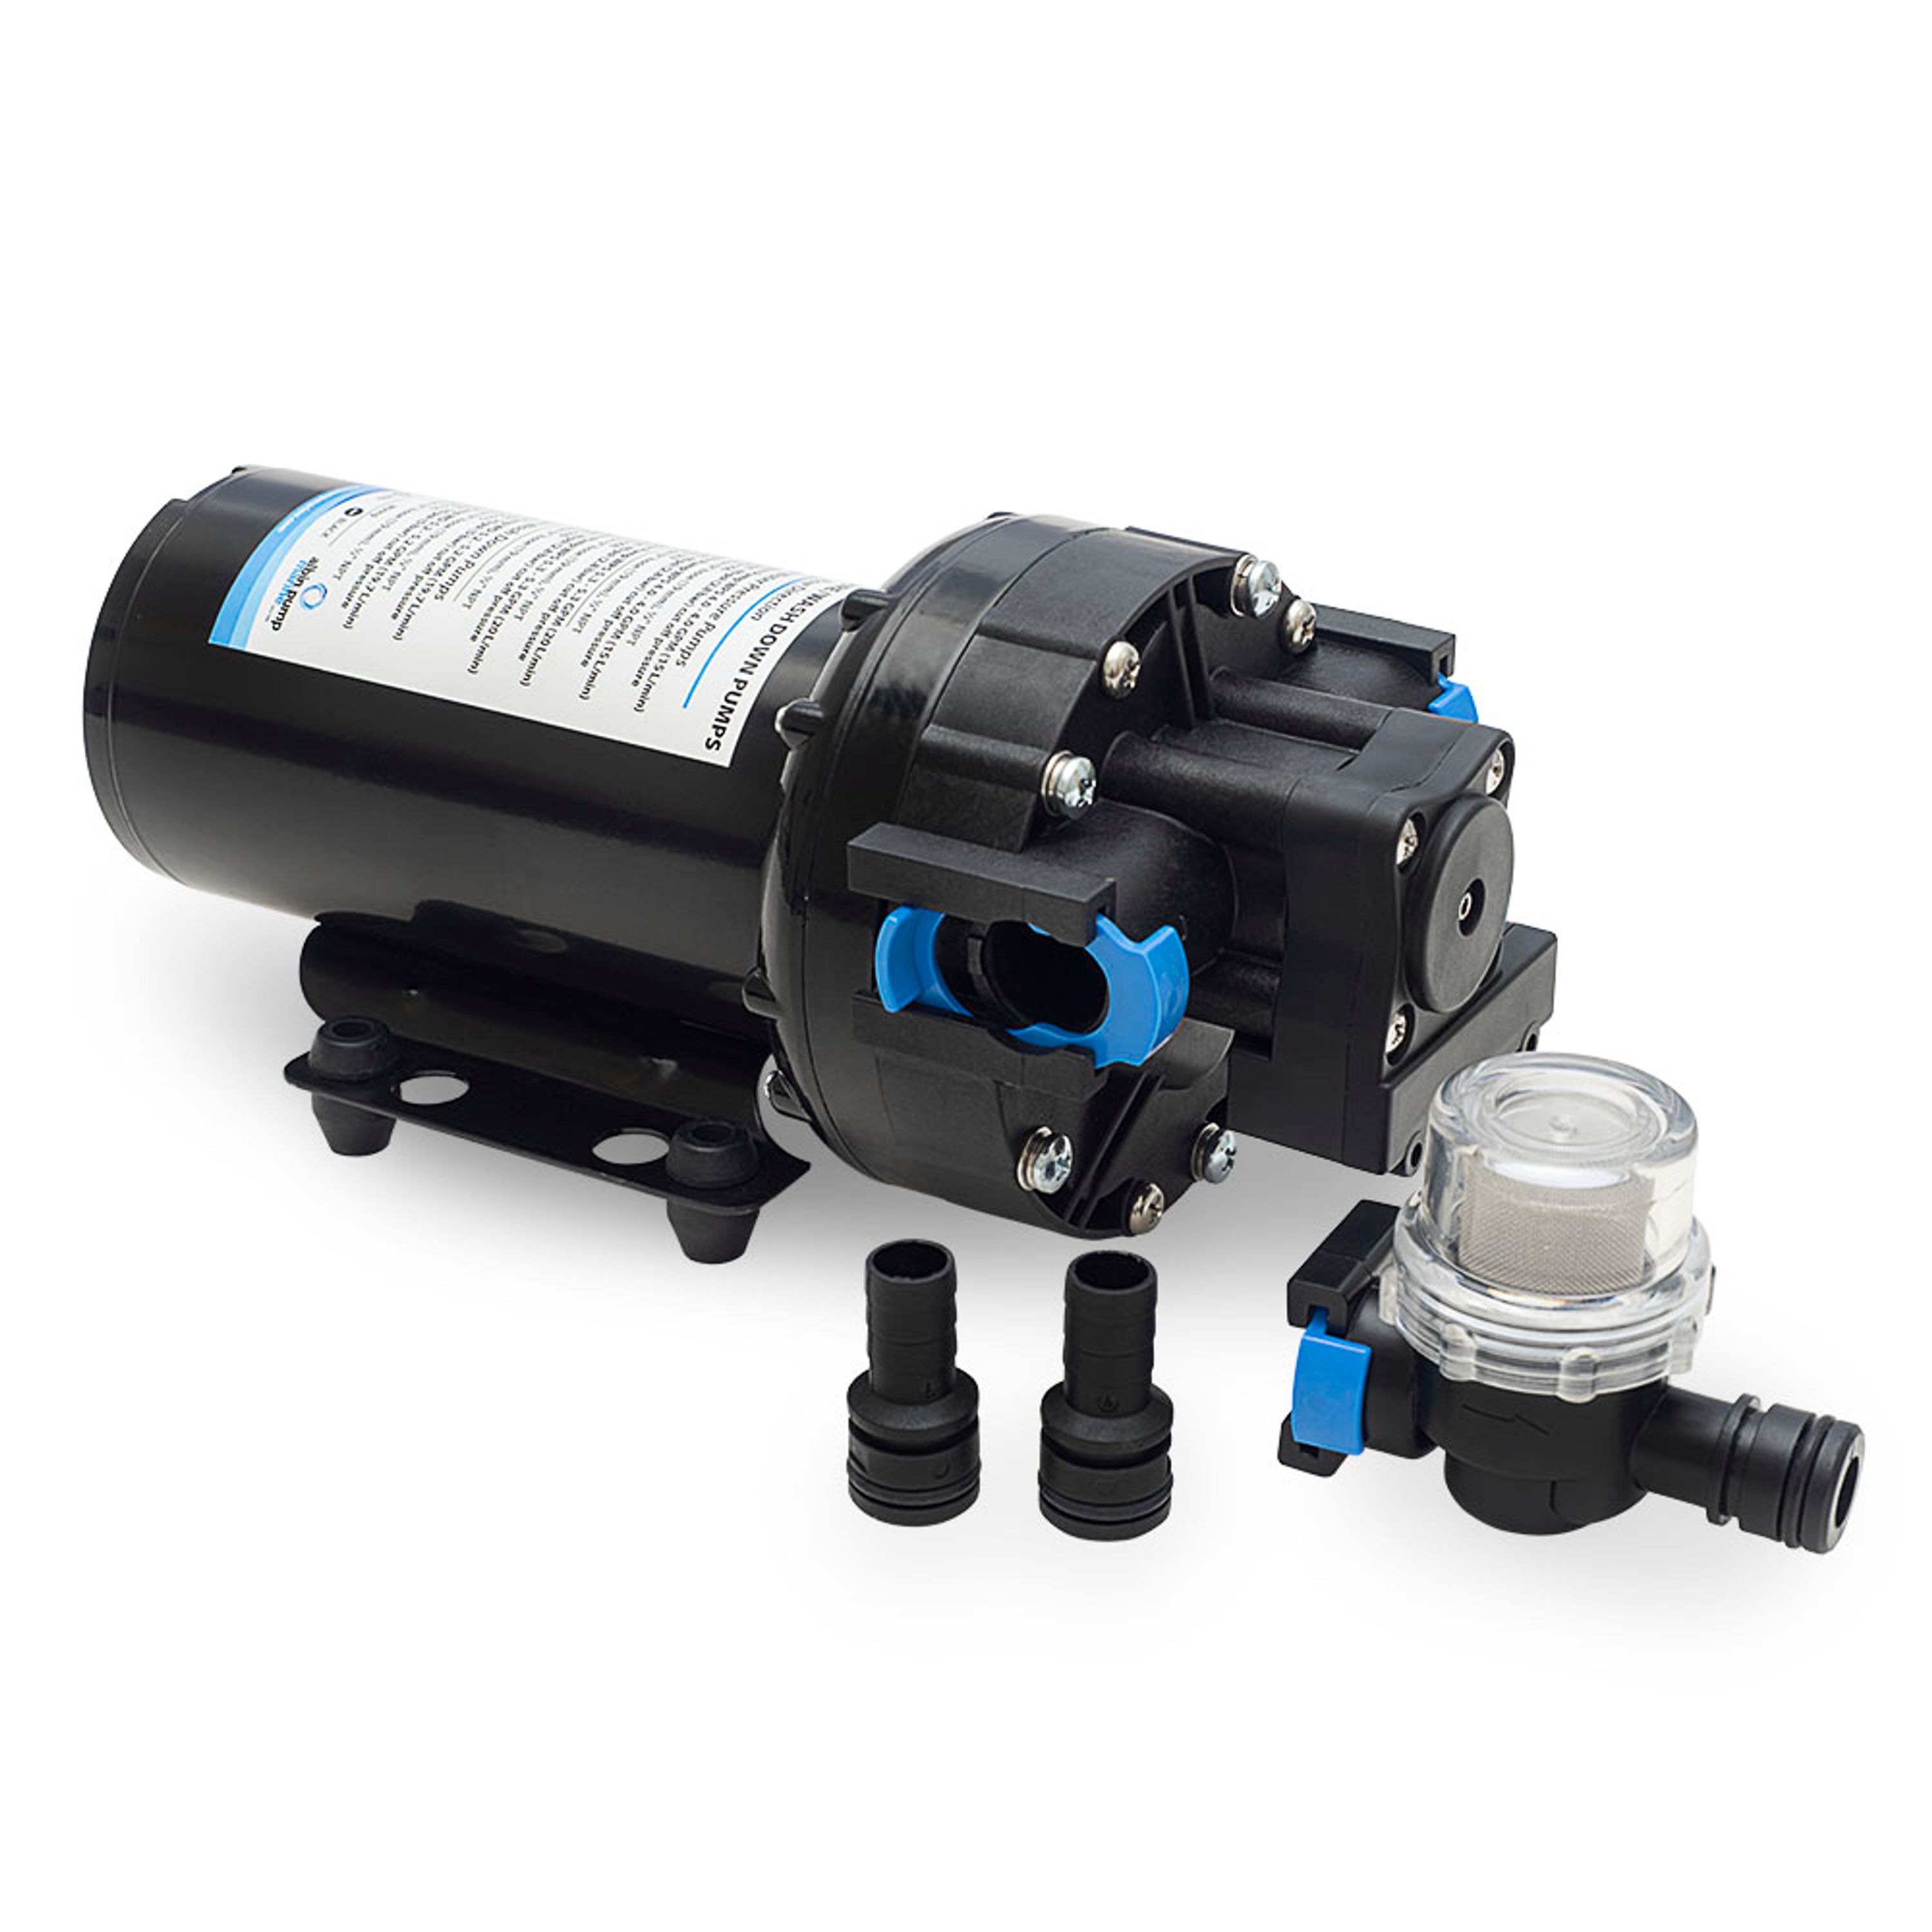 Water pressure pump wps 4.0 12v